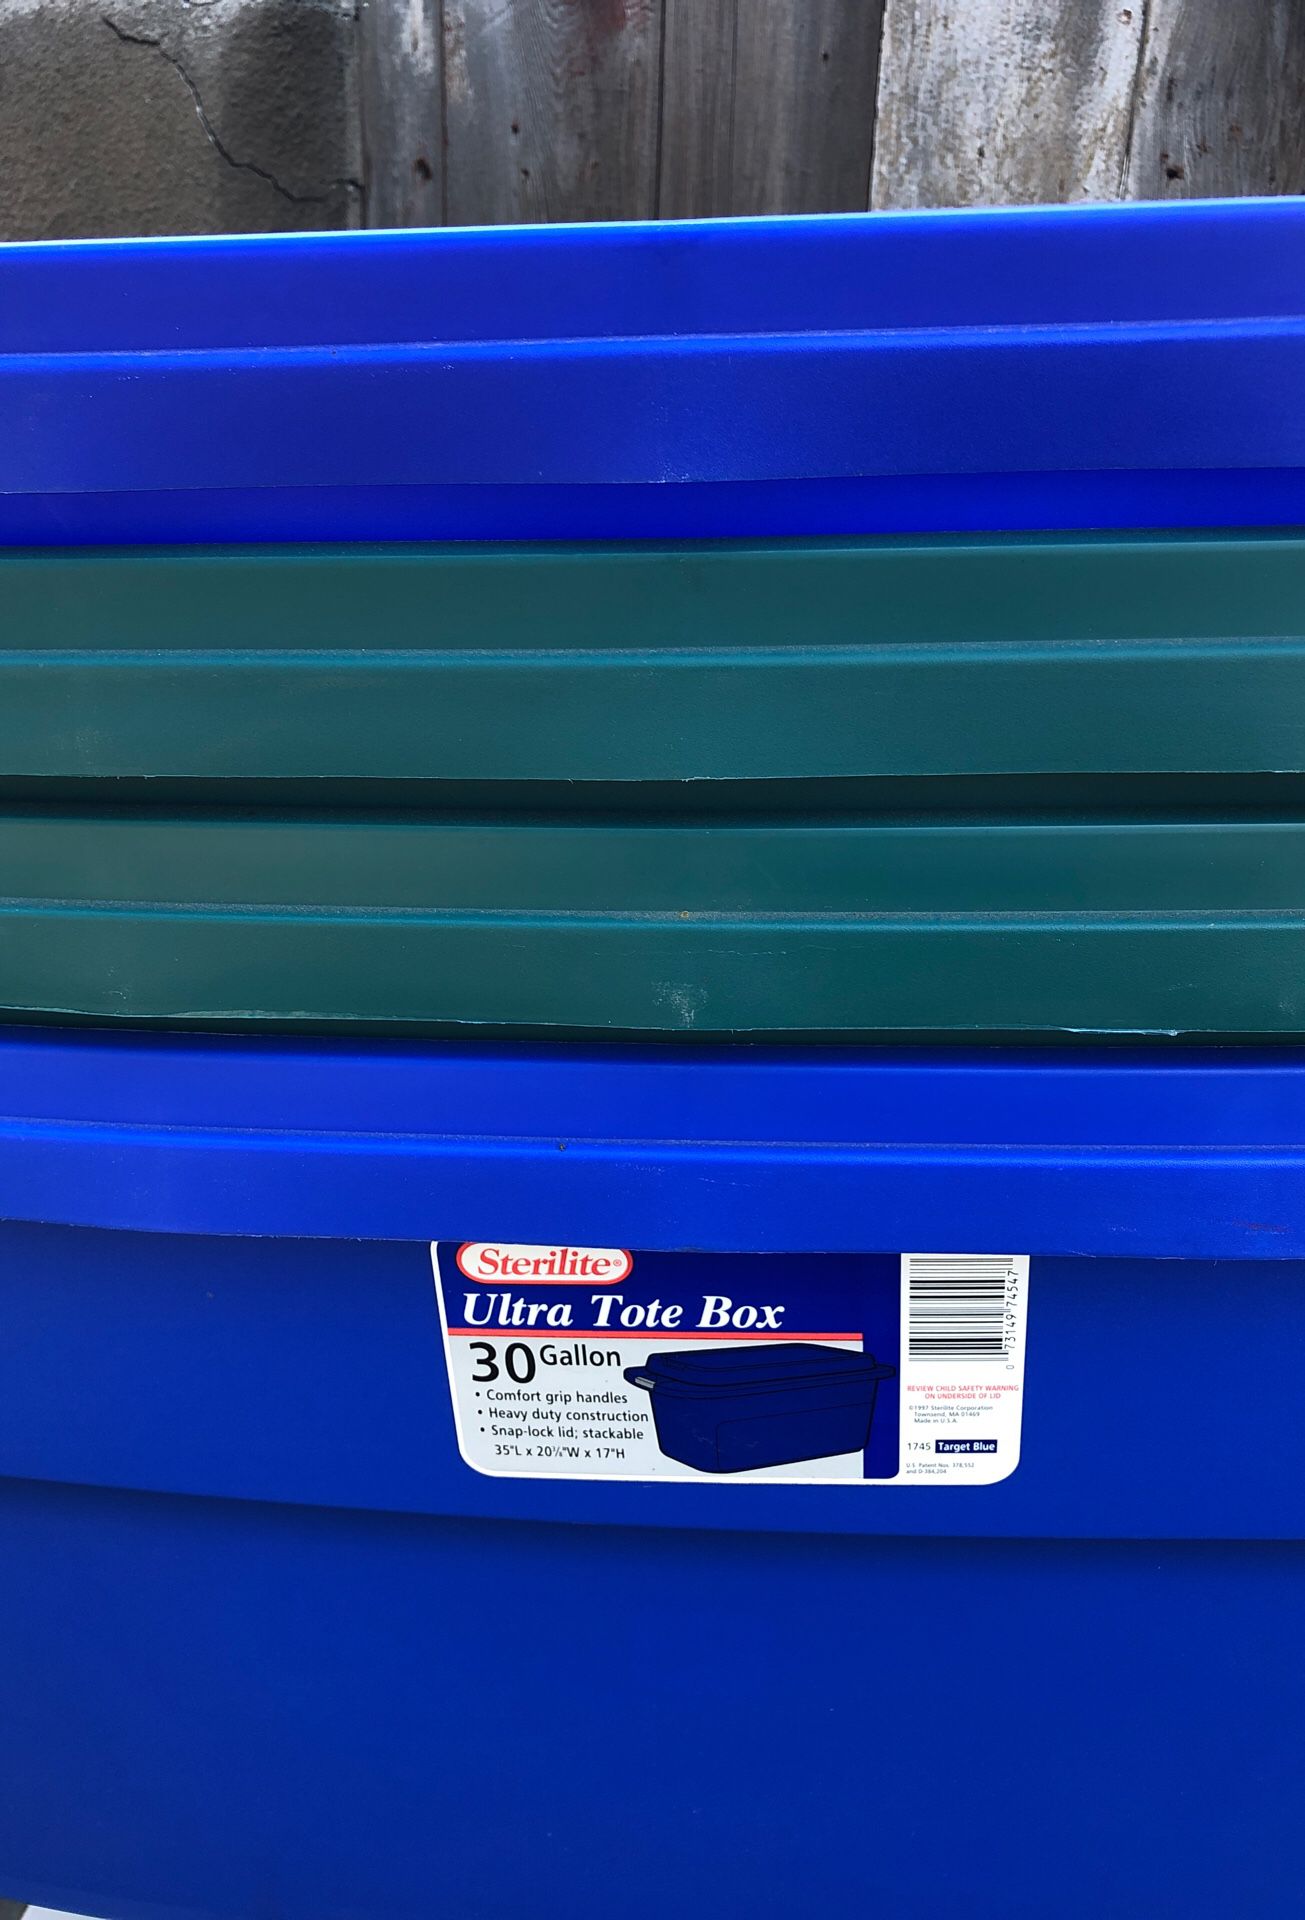 Sterility ultra tote box 30 gallon storage bin